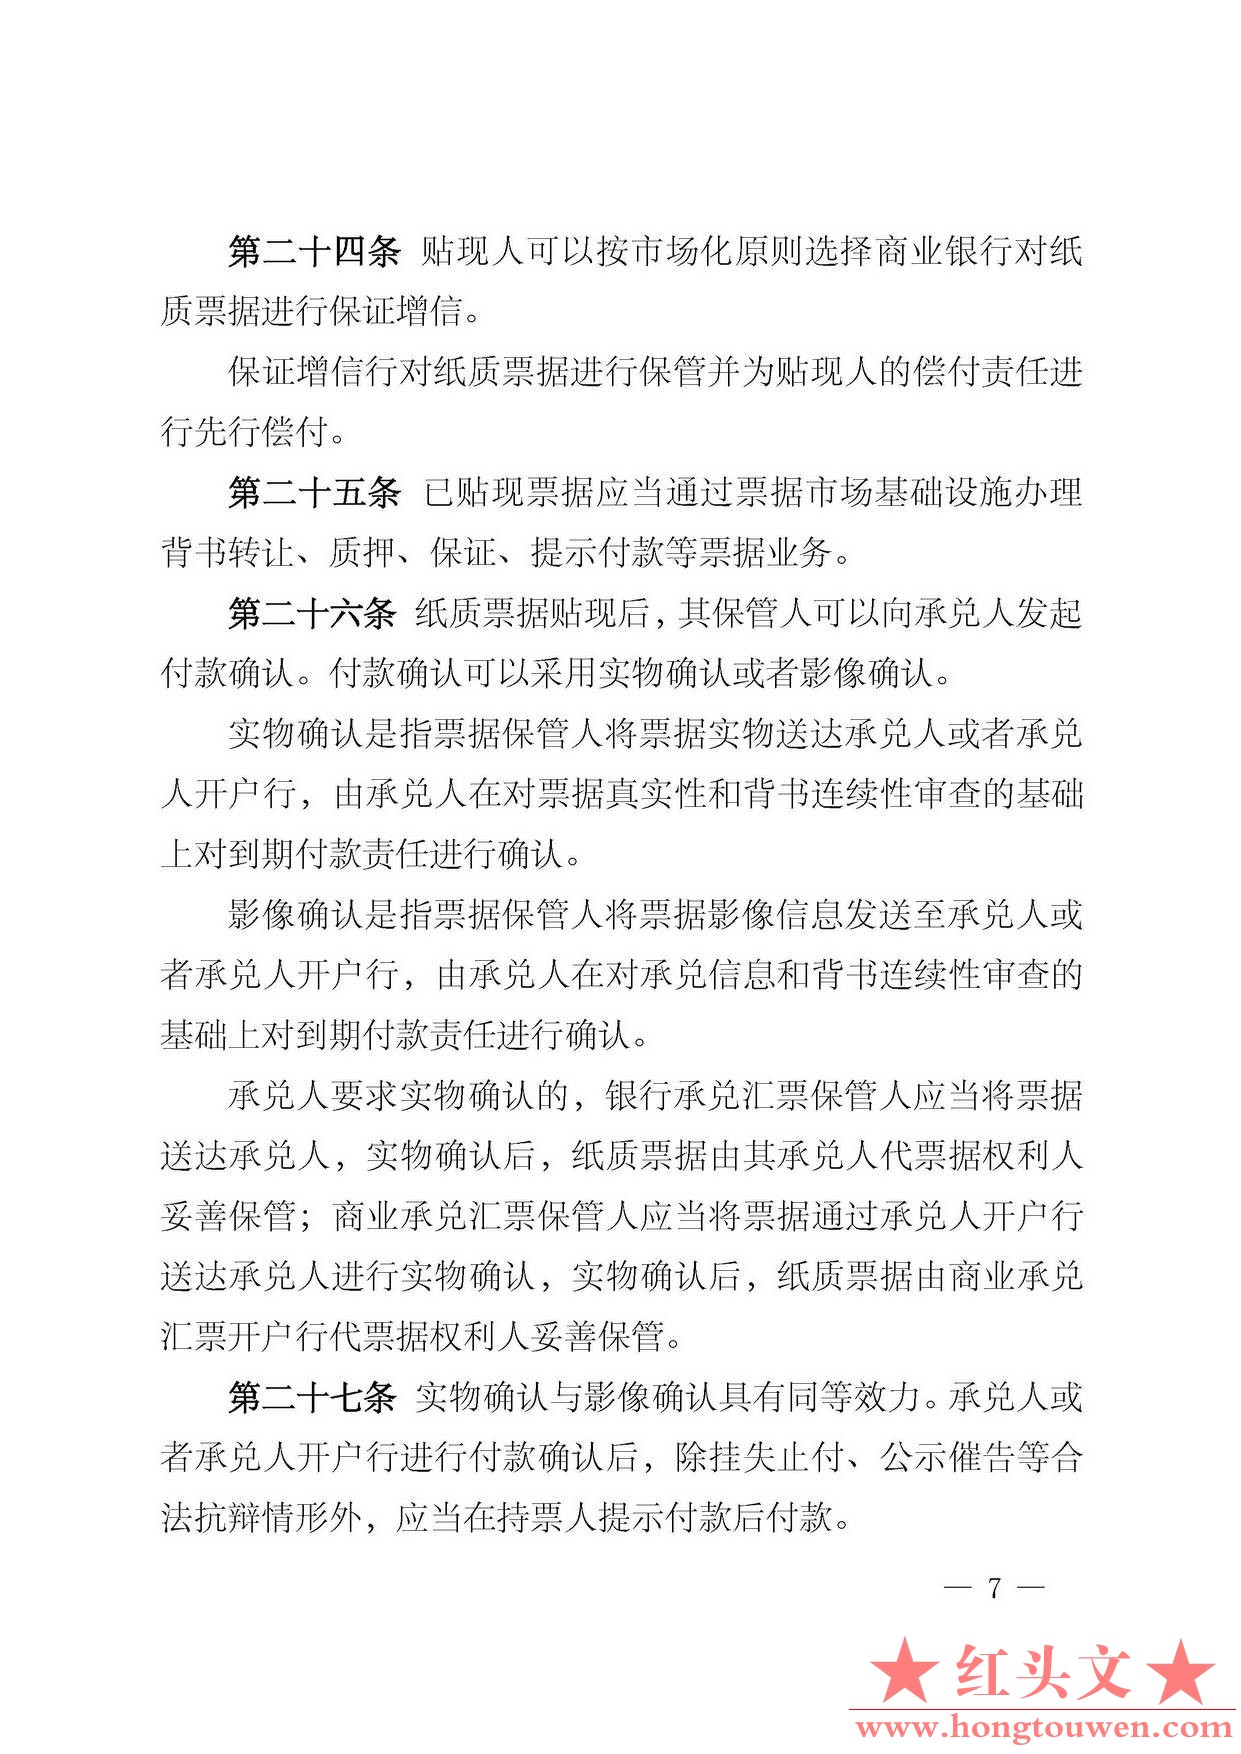 中国人民银行公告[2016]29号-票据交易管理办法_页面_07.jpg